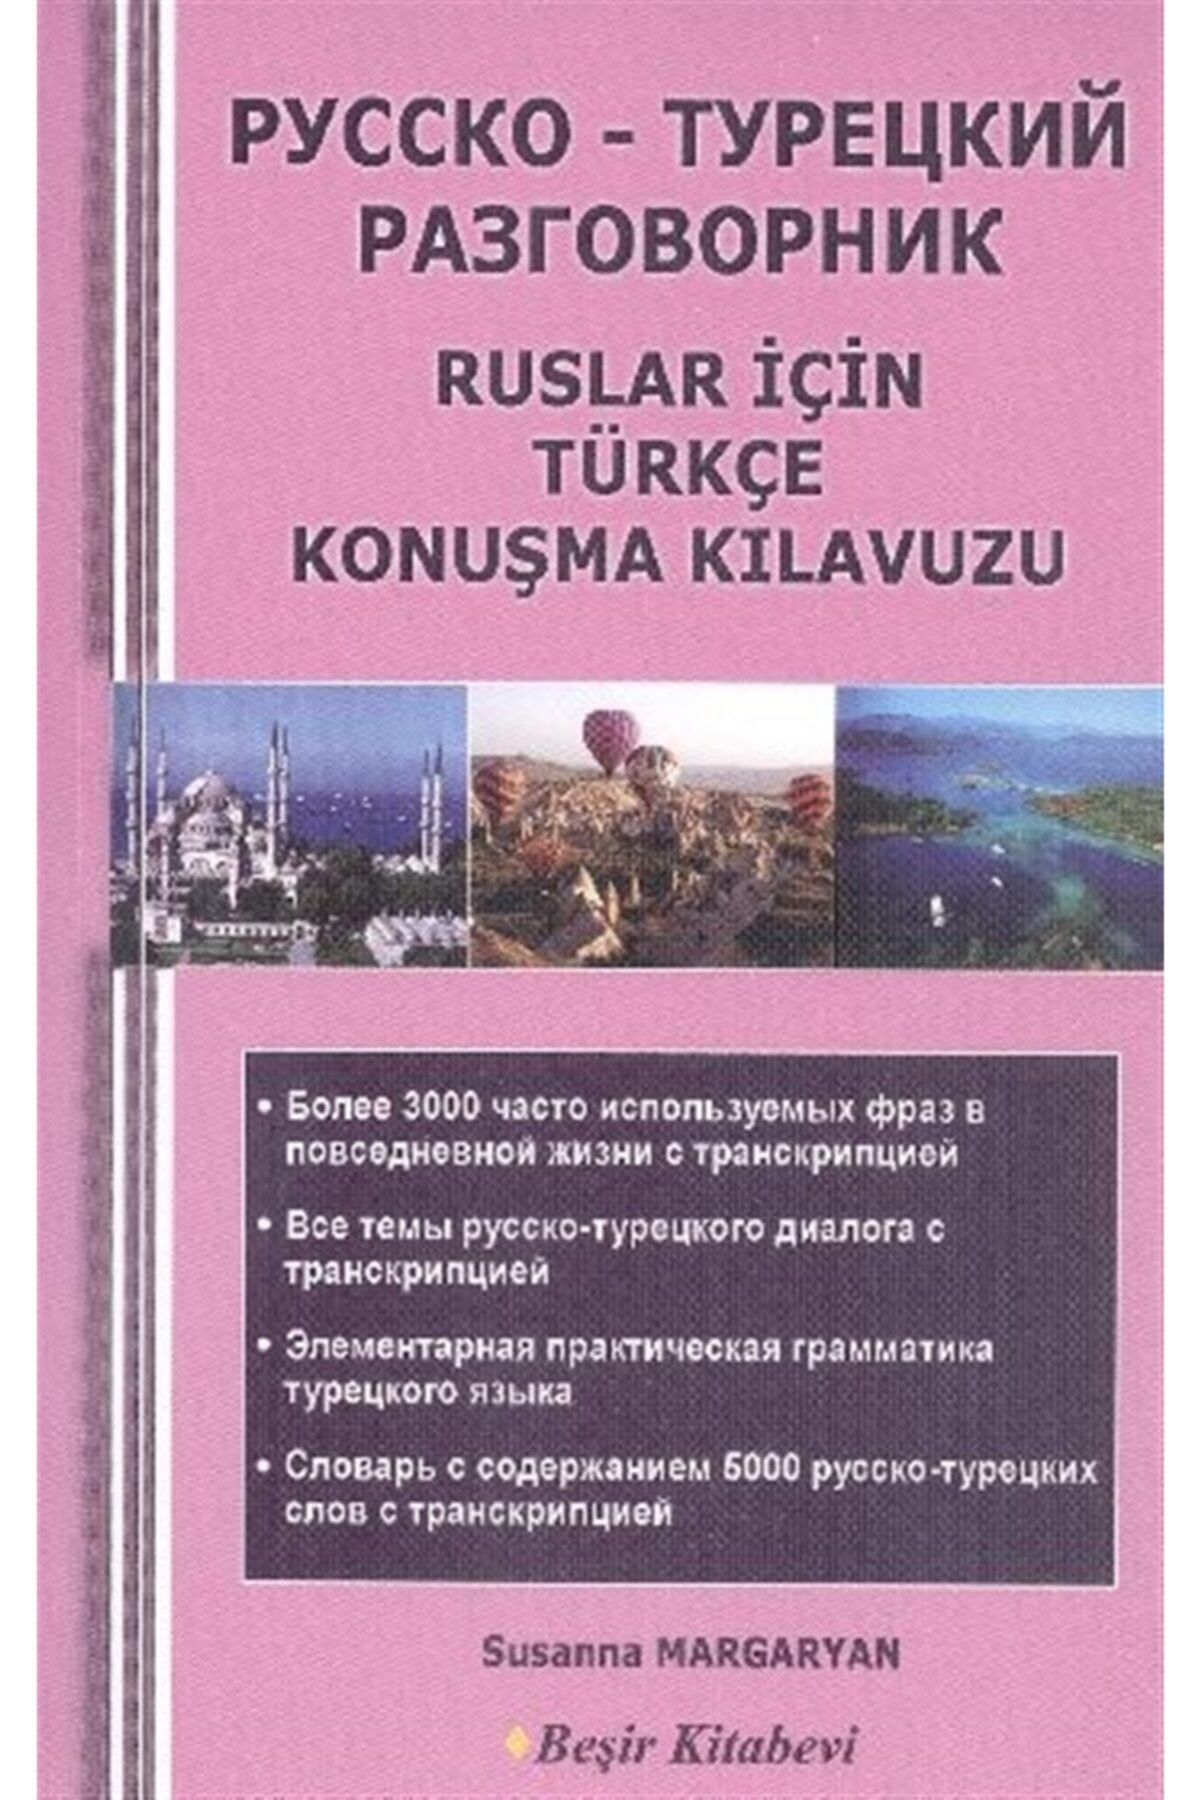 Beşir Kitabevi Ruslar Için Türkçe Konuşma Kılavuzu - Susanna Margaryan 9786055910945